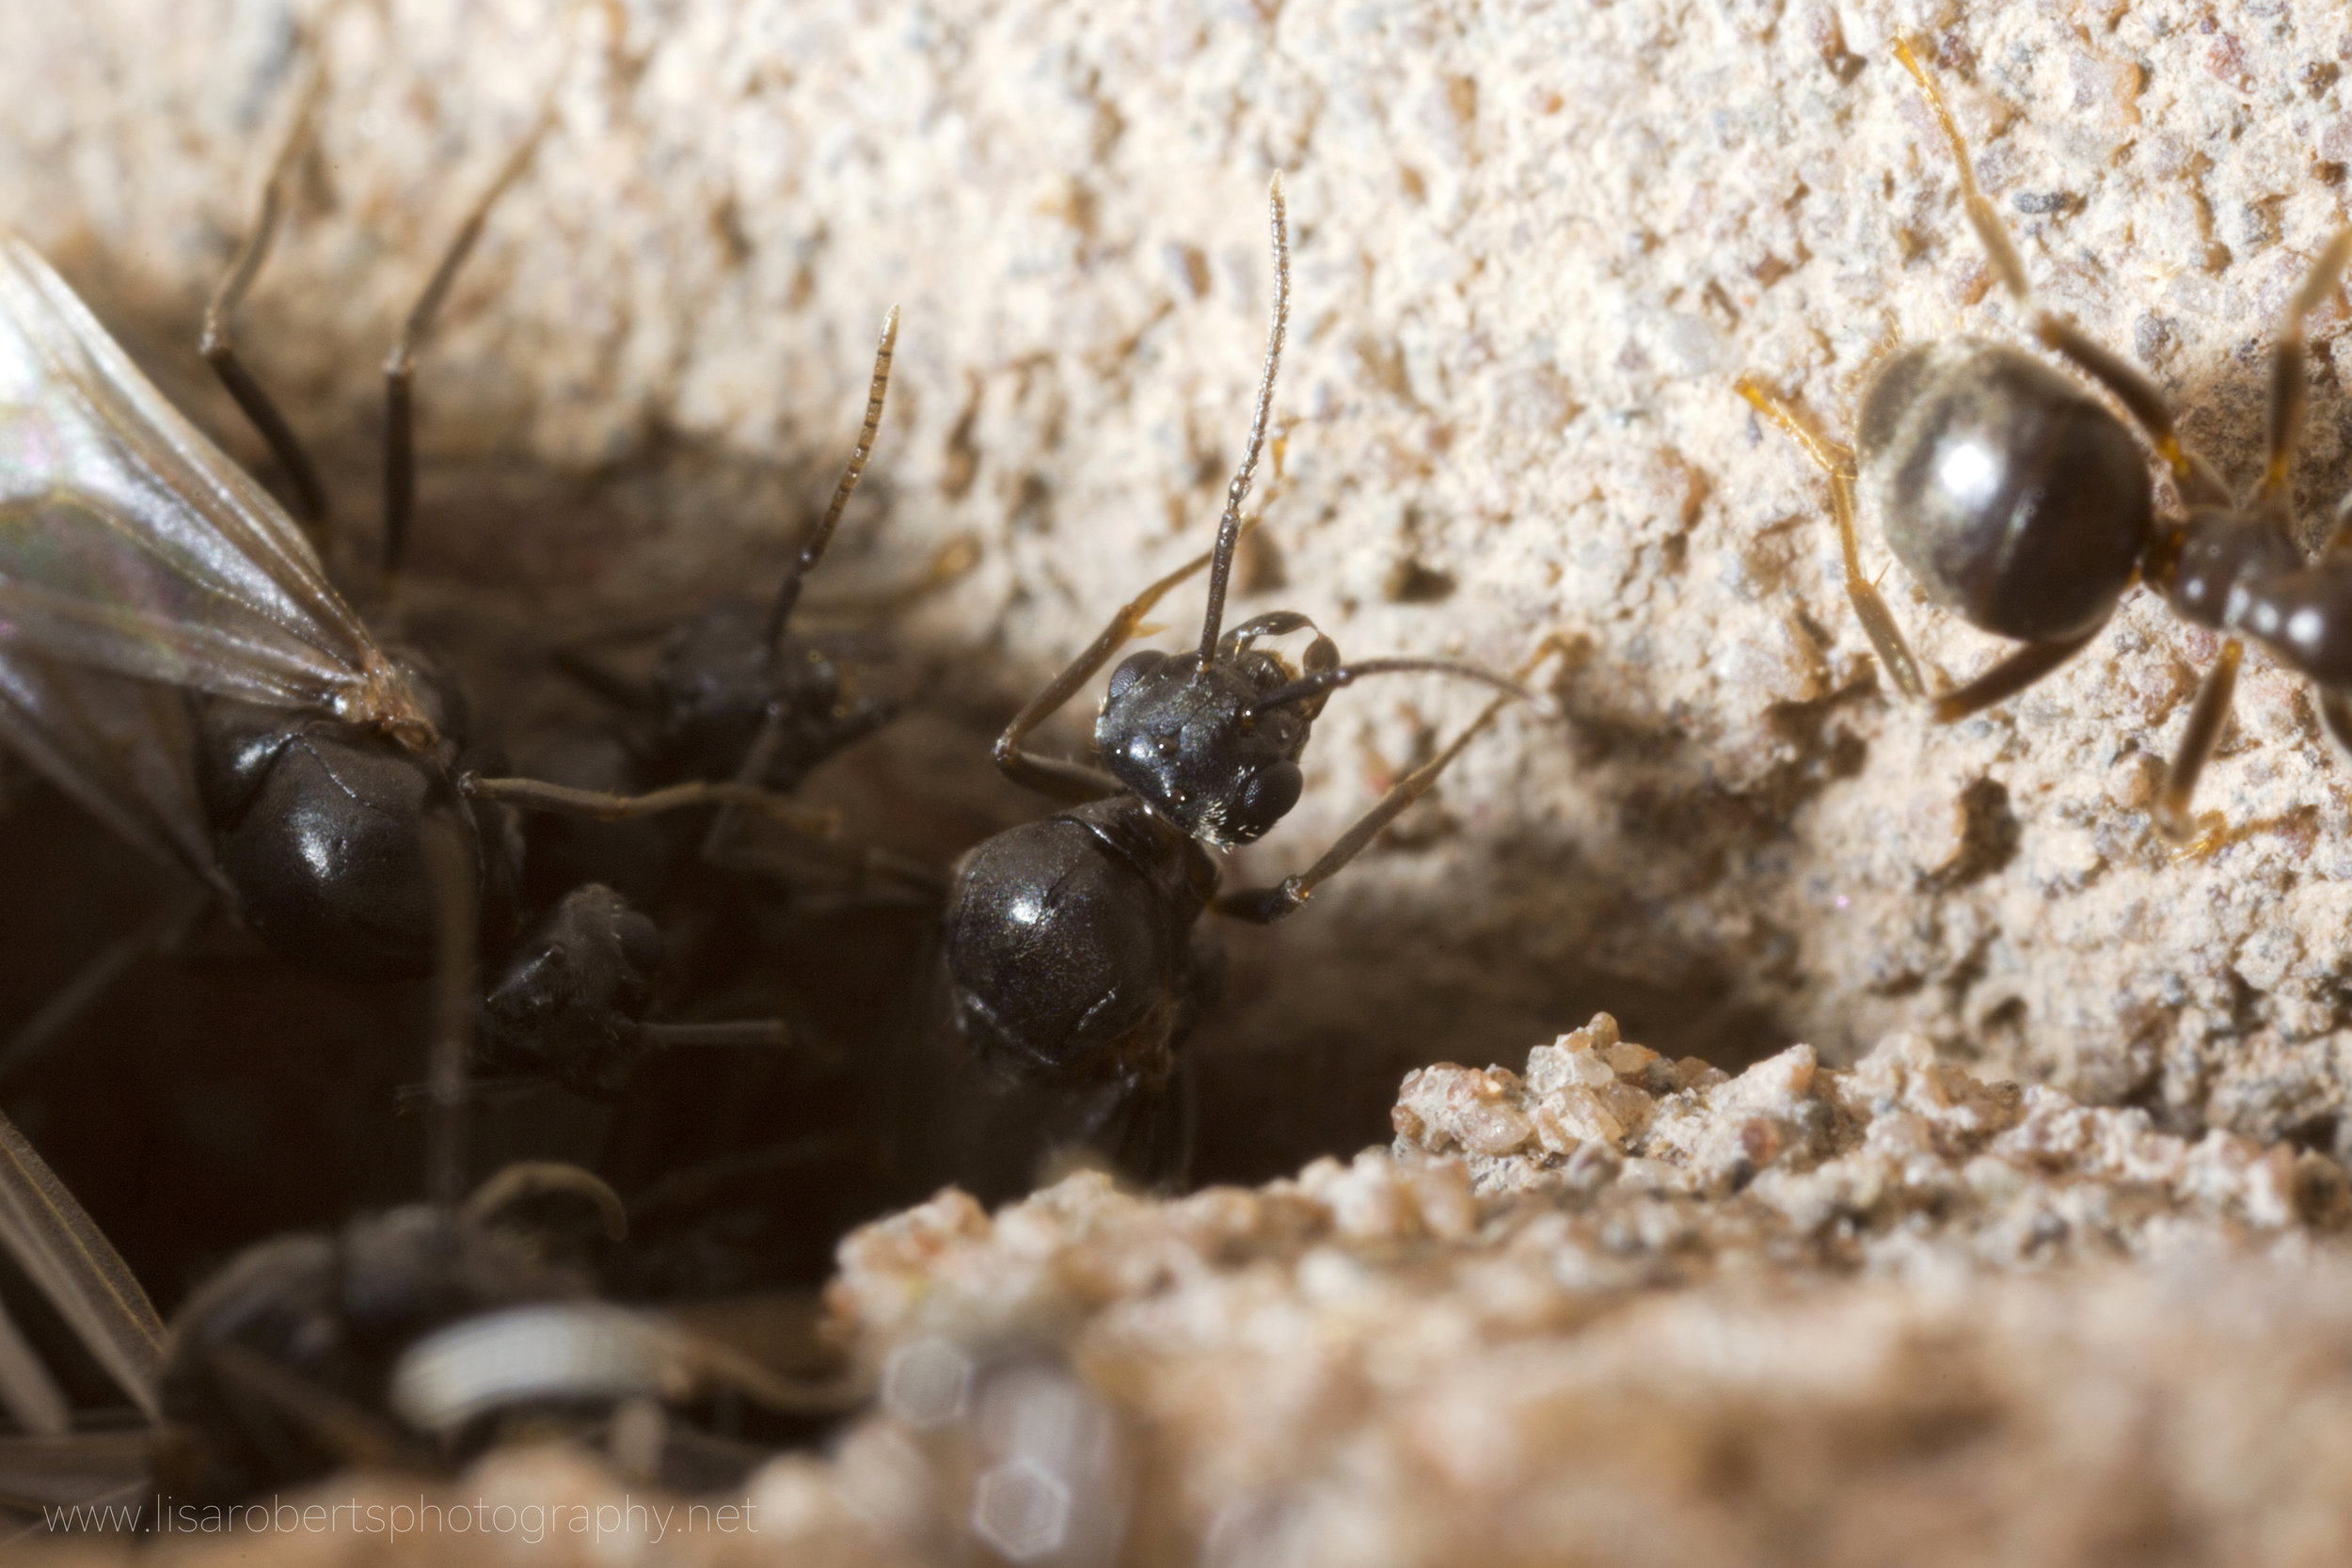   Common Black garden Ant  